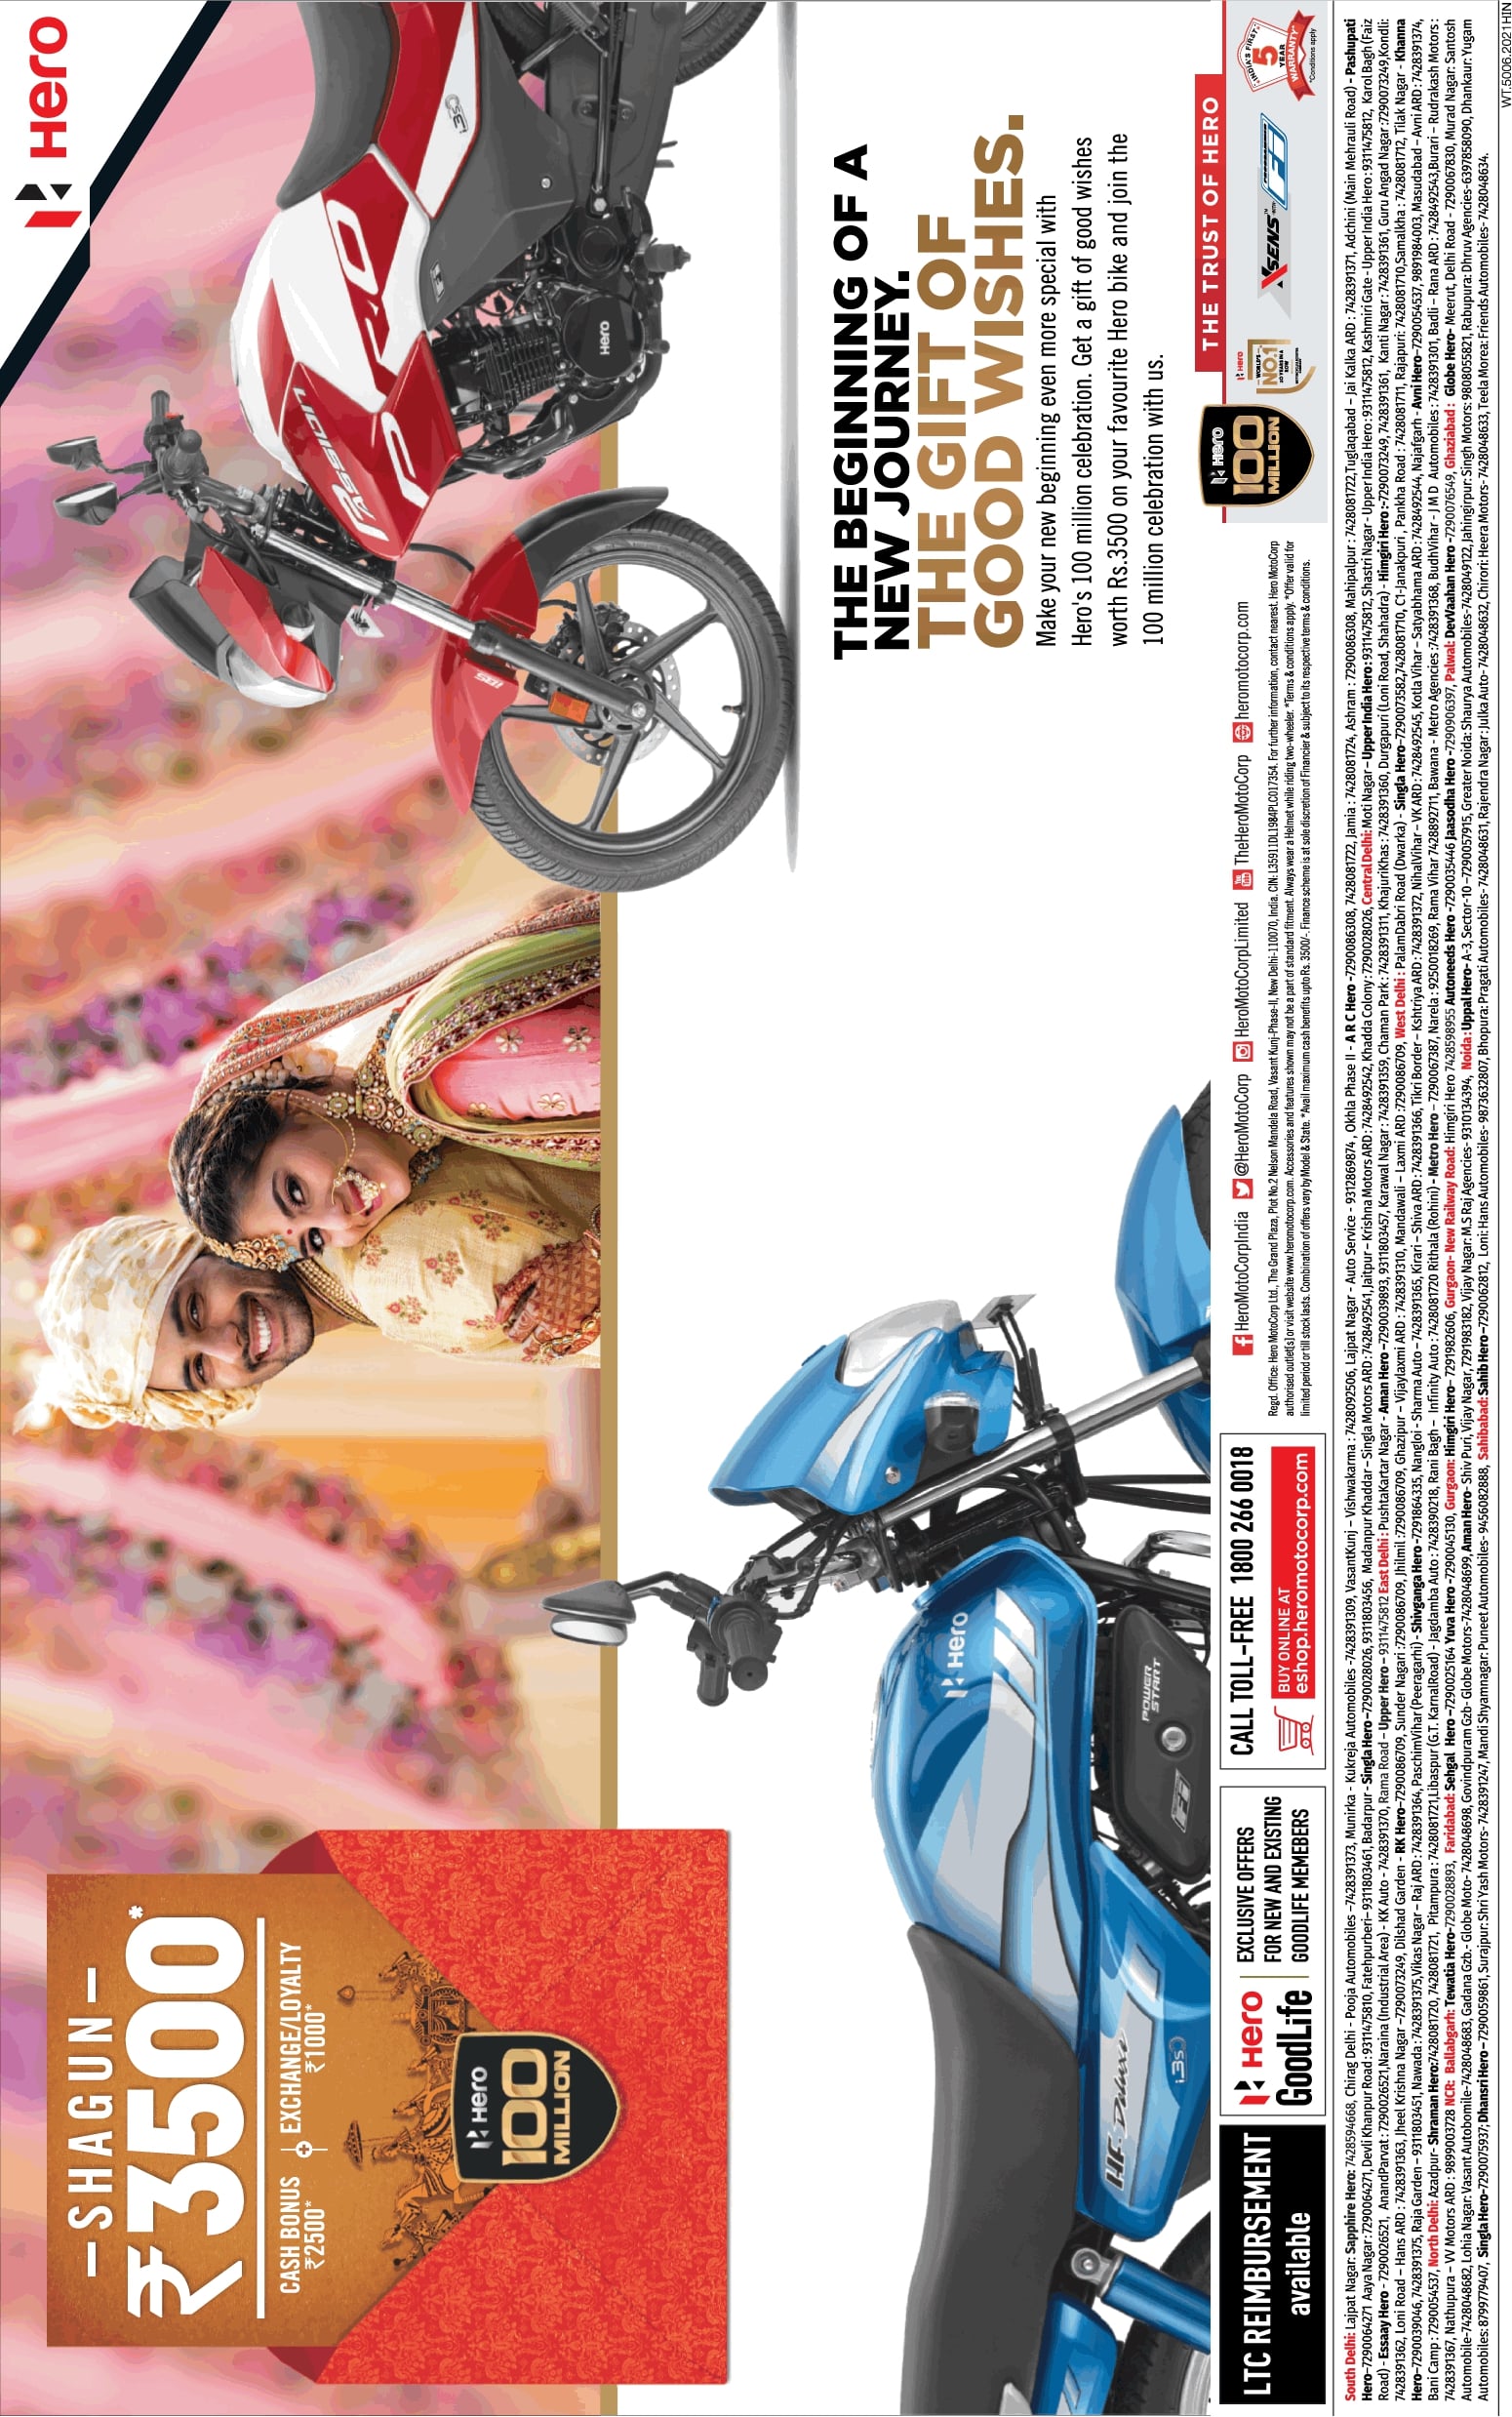 hero-bikes-shagun-rupees-3500-ad-delhi-times-21-03-2021